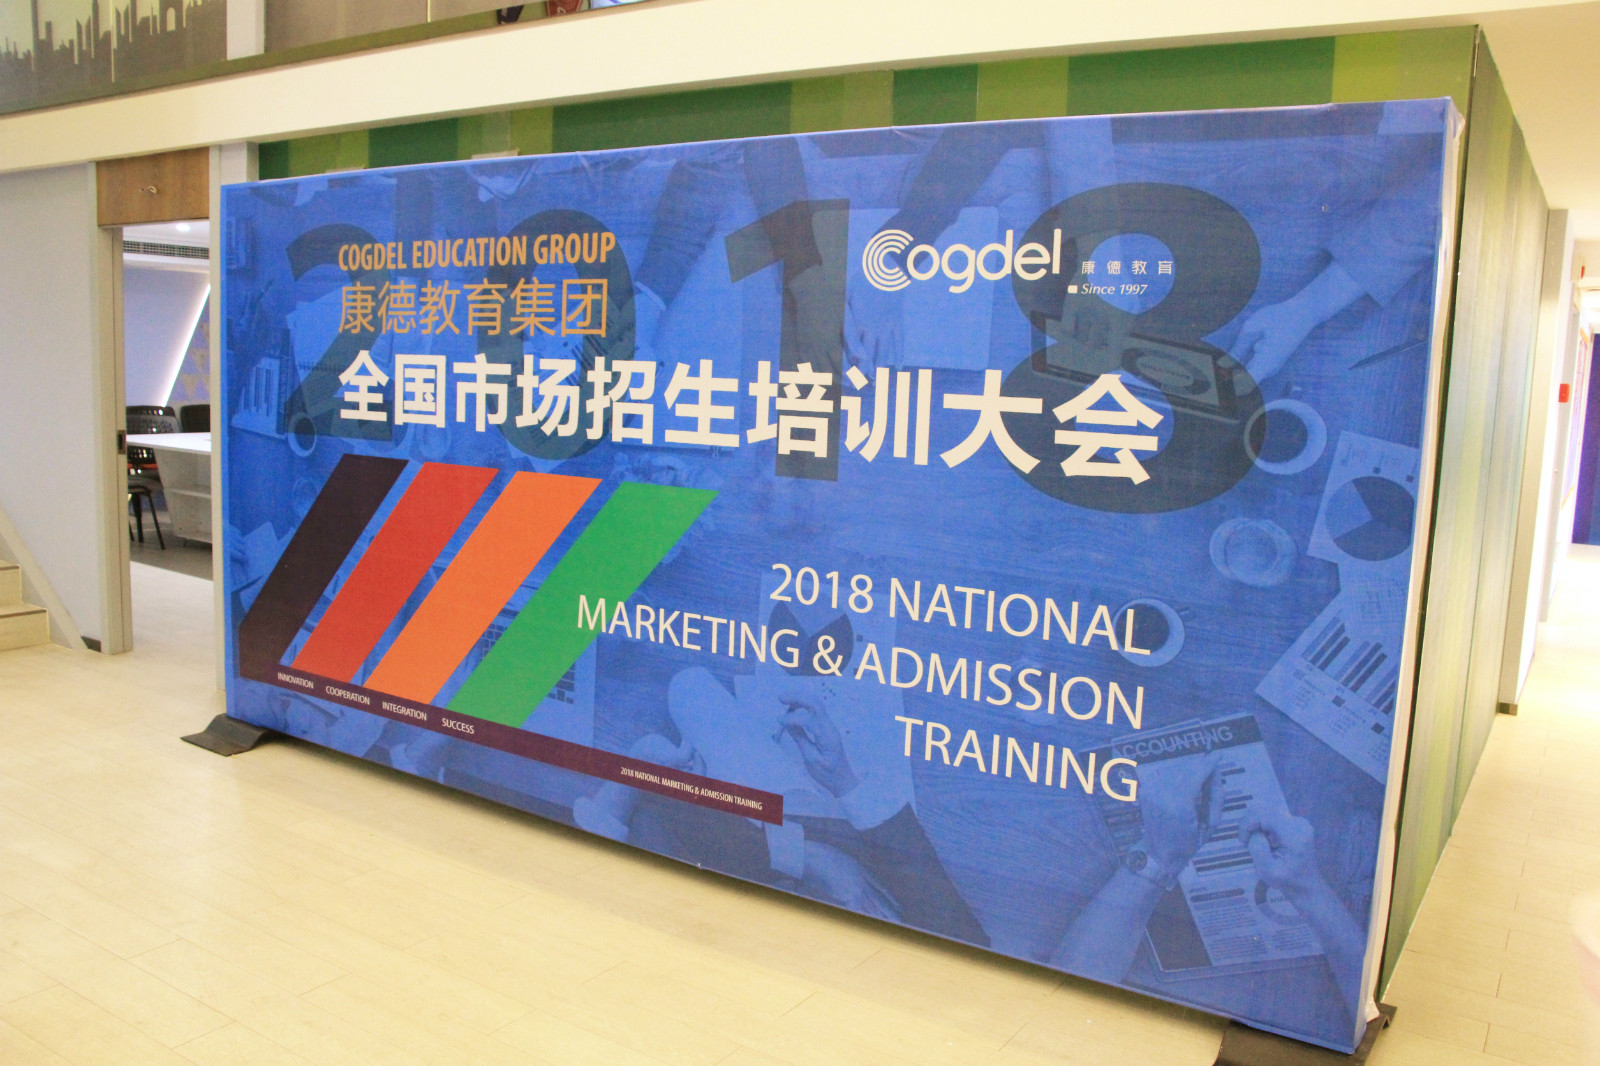 康德教育集团2018全国市场招生培训大会在重庆顺利举行